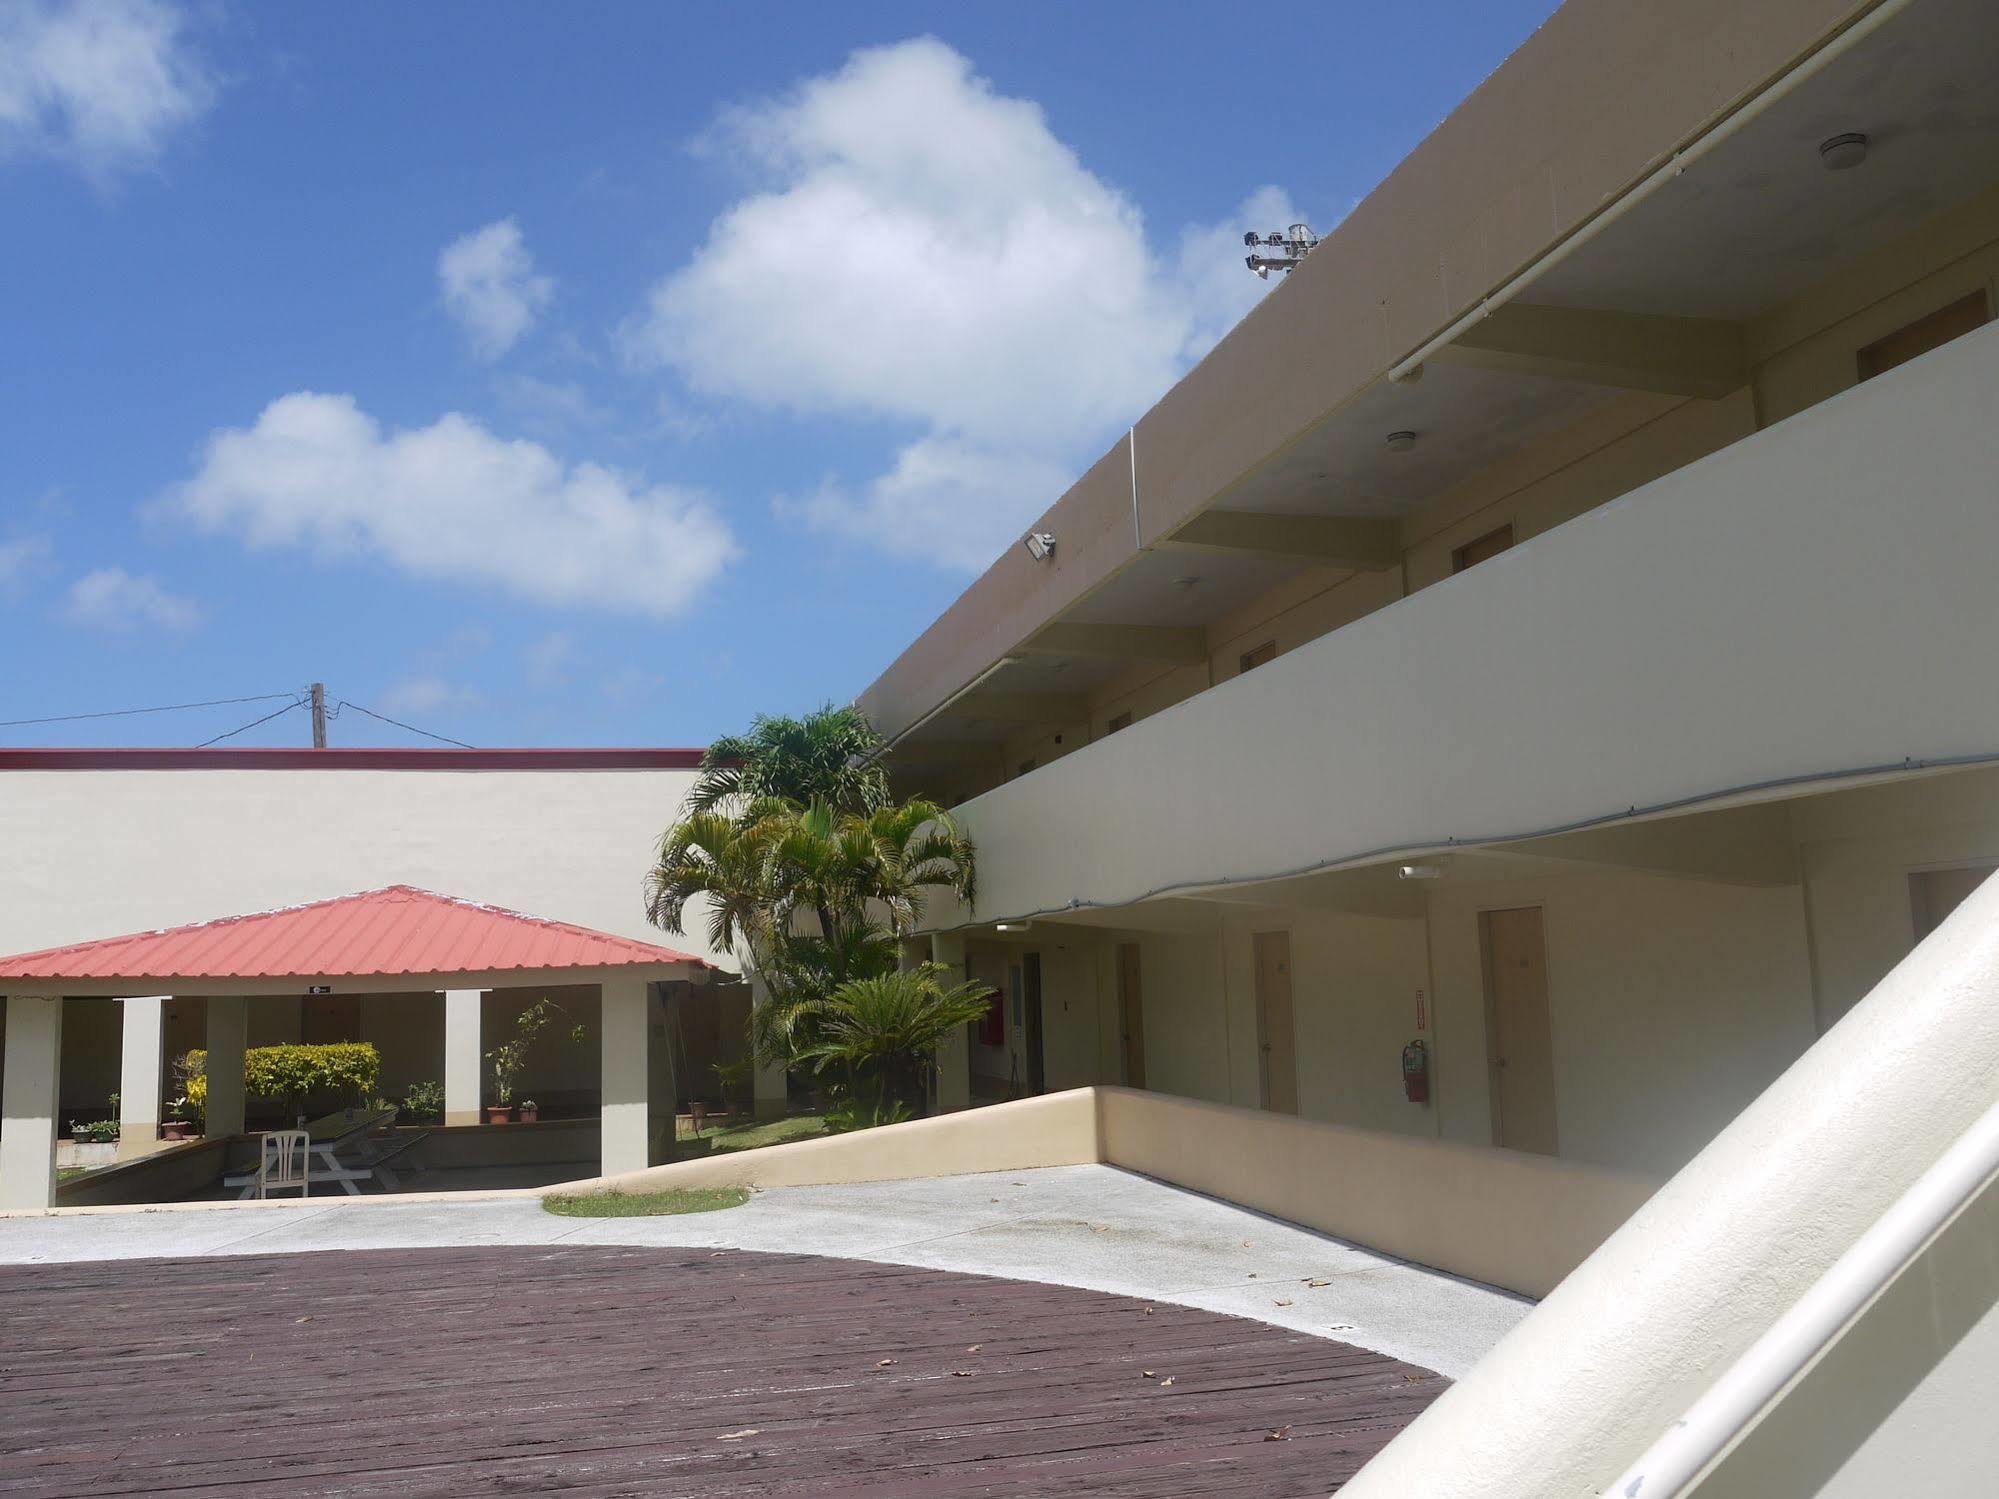 Sun Palace Hotel Saipan Exterior photo